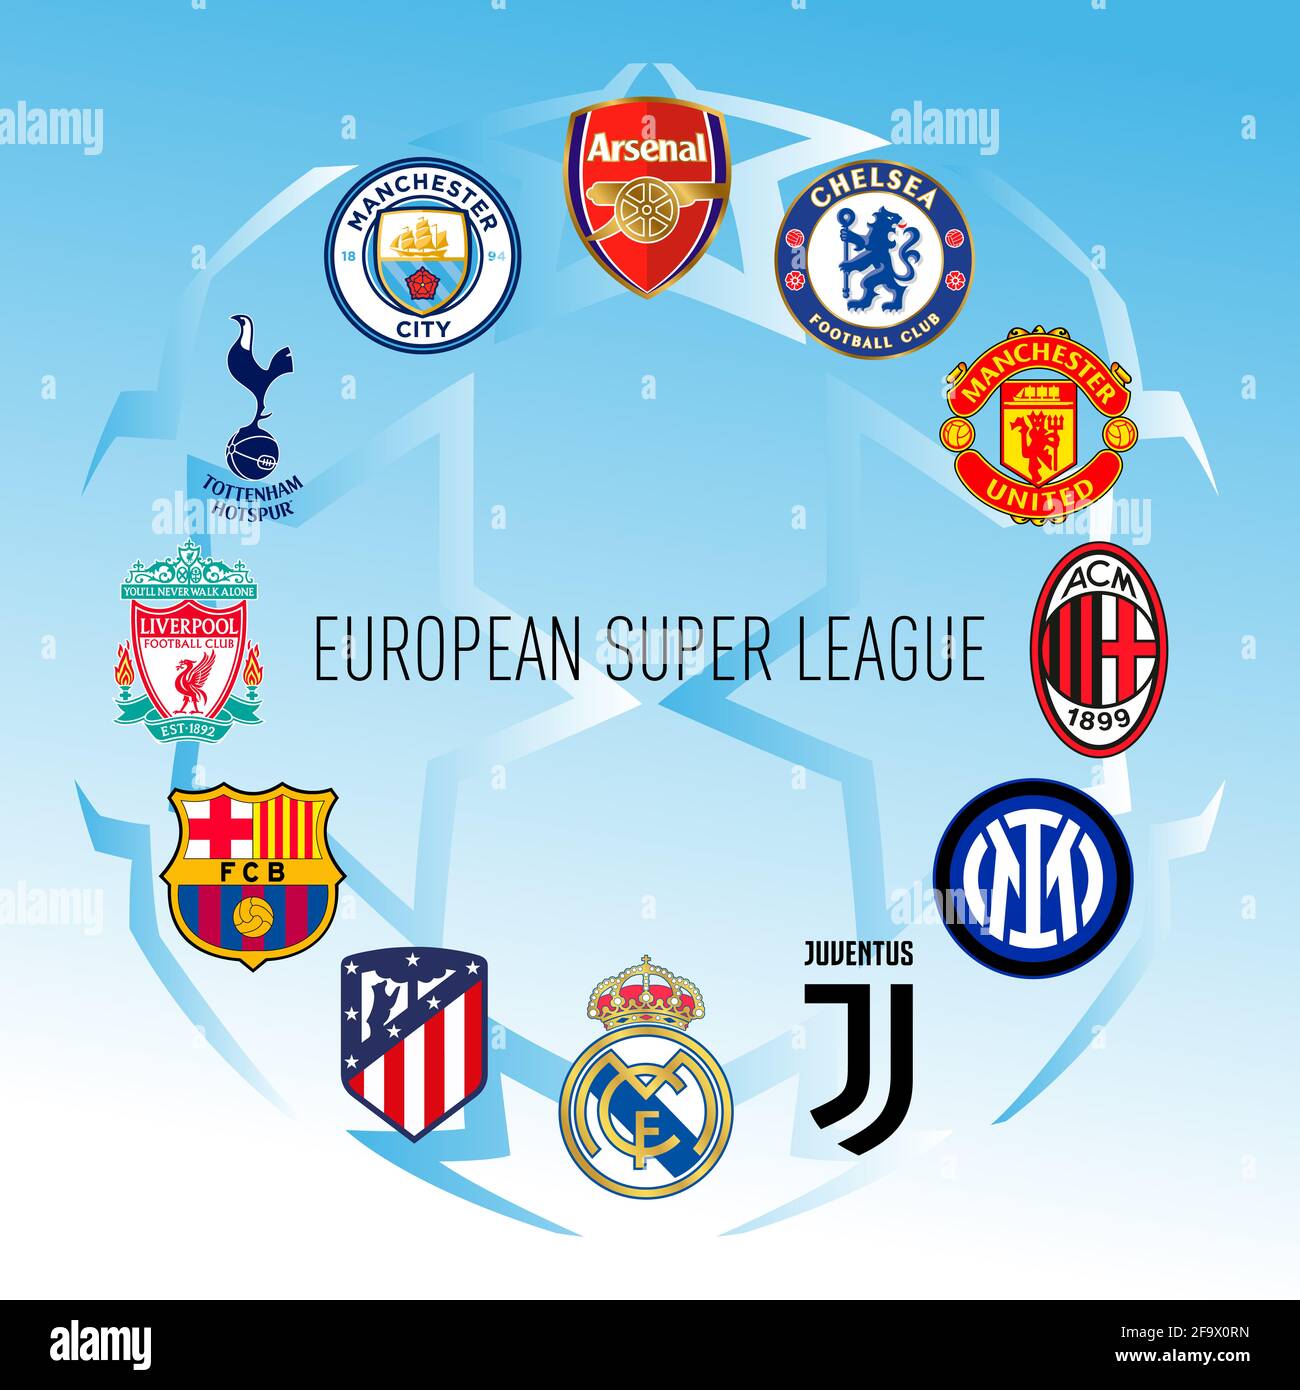 Europa, año 2021, el escudo de armas de los clubes de fútbol se unen en el nuevo campeonato de la SuperLiga Europea, ilustración vectorial Foto de stock